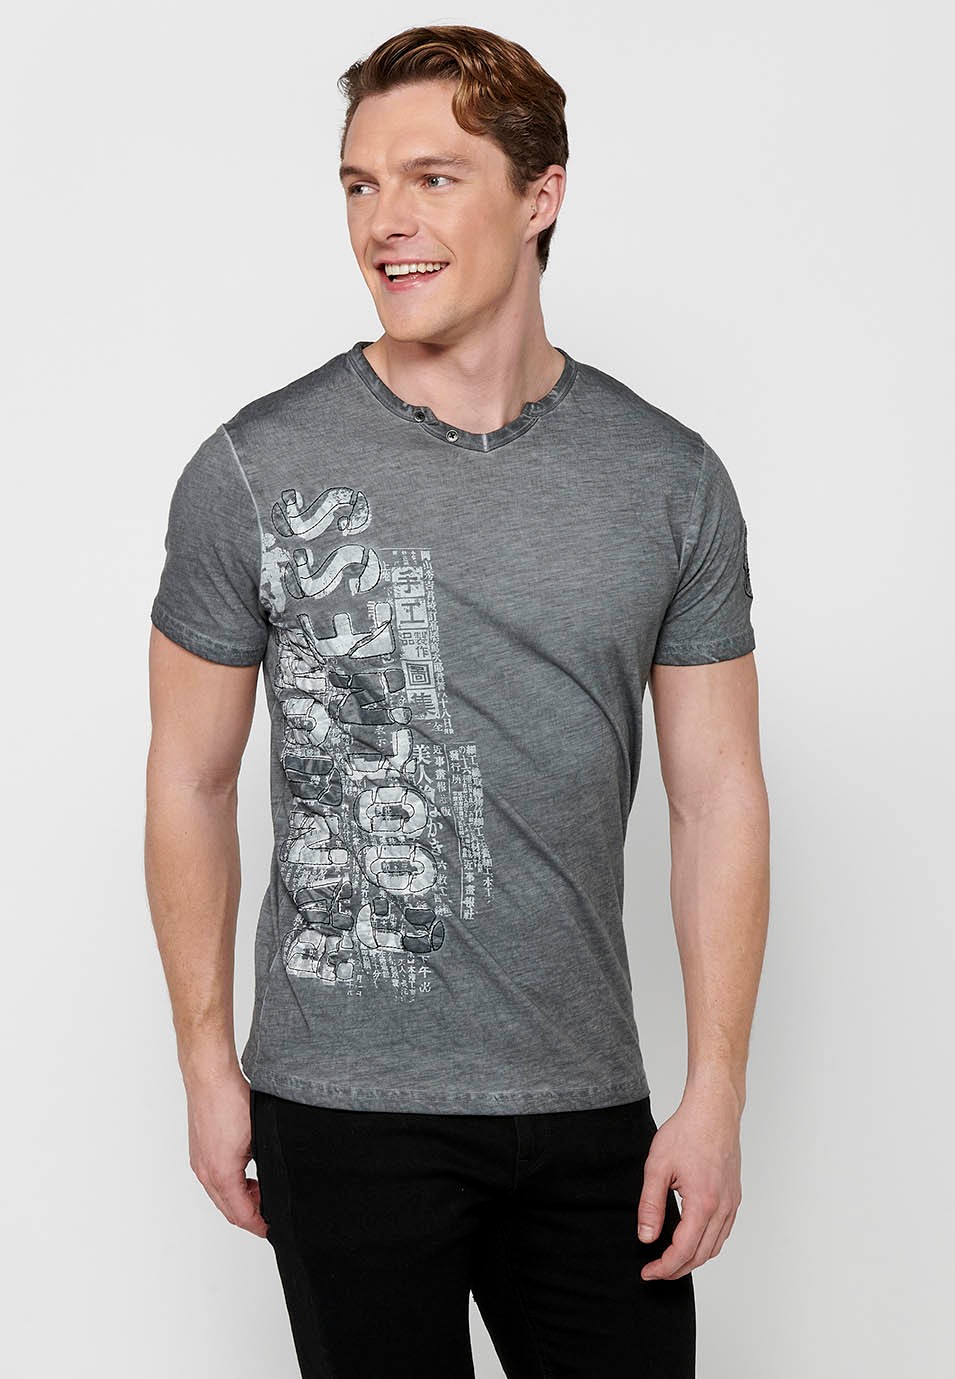 Kurzarm-T-Shirt aus Baumwolle, V-Ausschnitt mit Knopfverzierung, graue Farbe für Herren